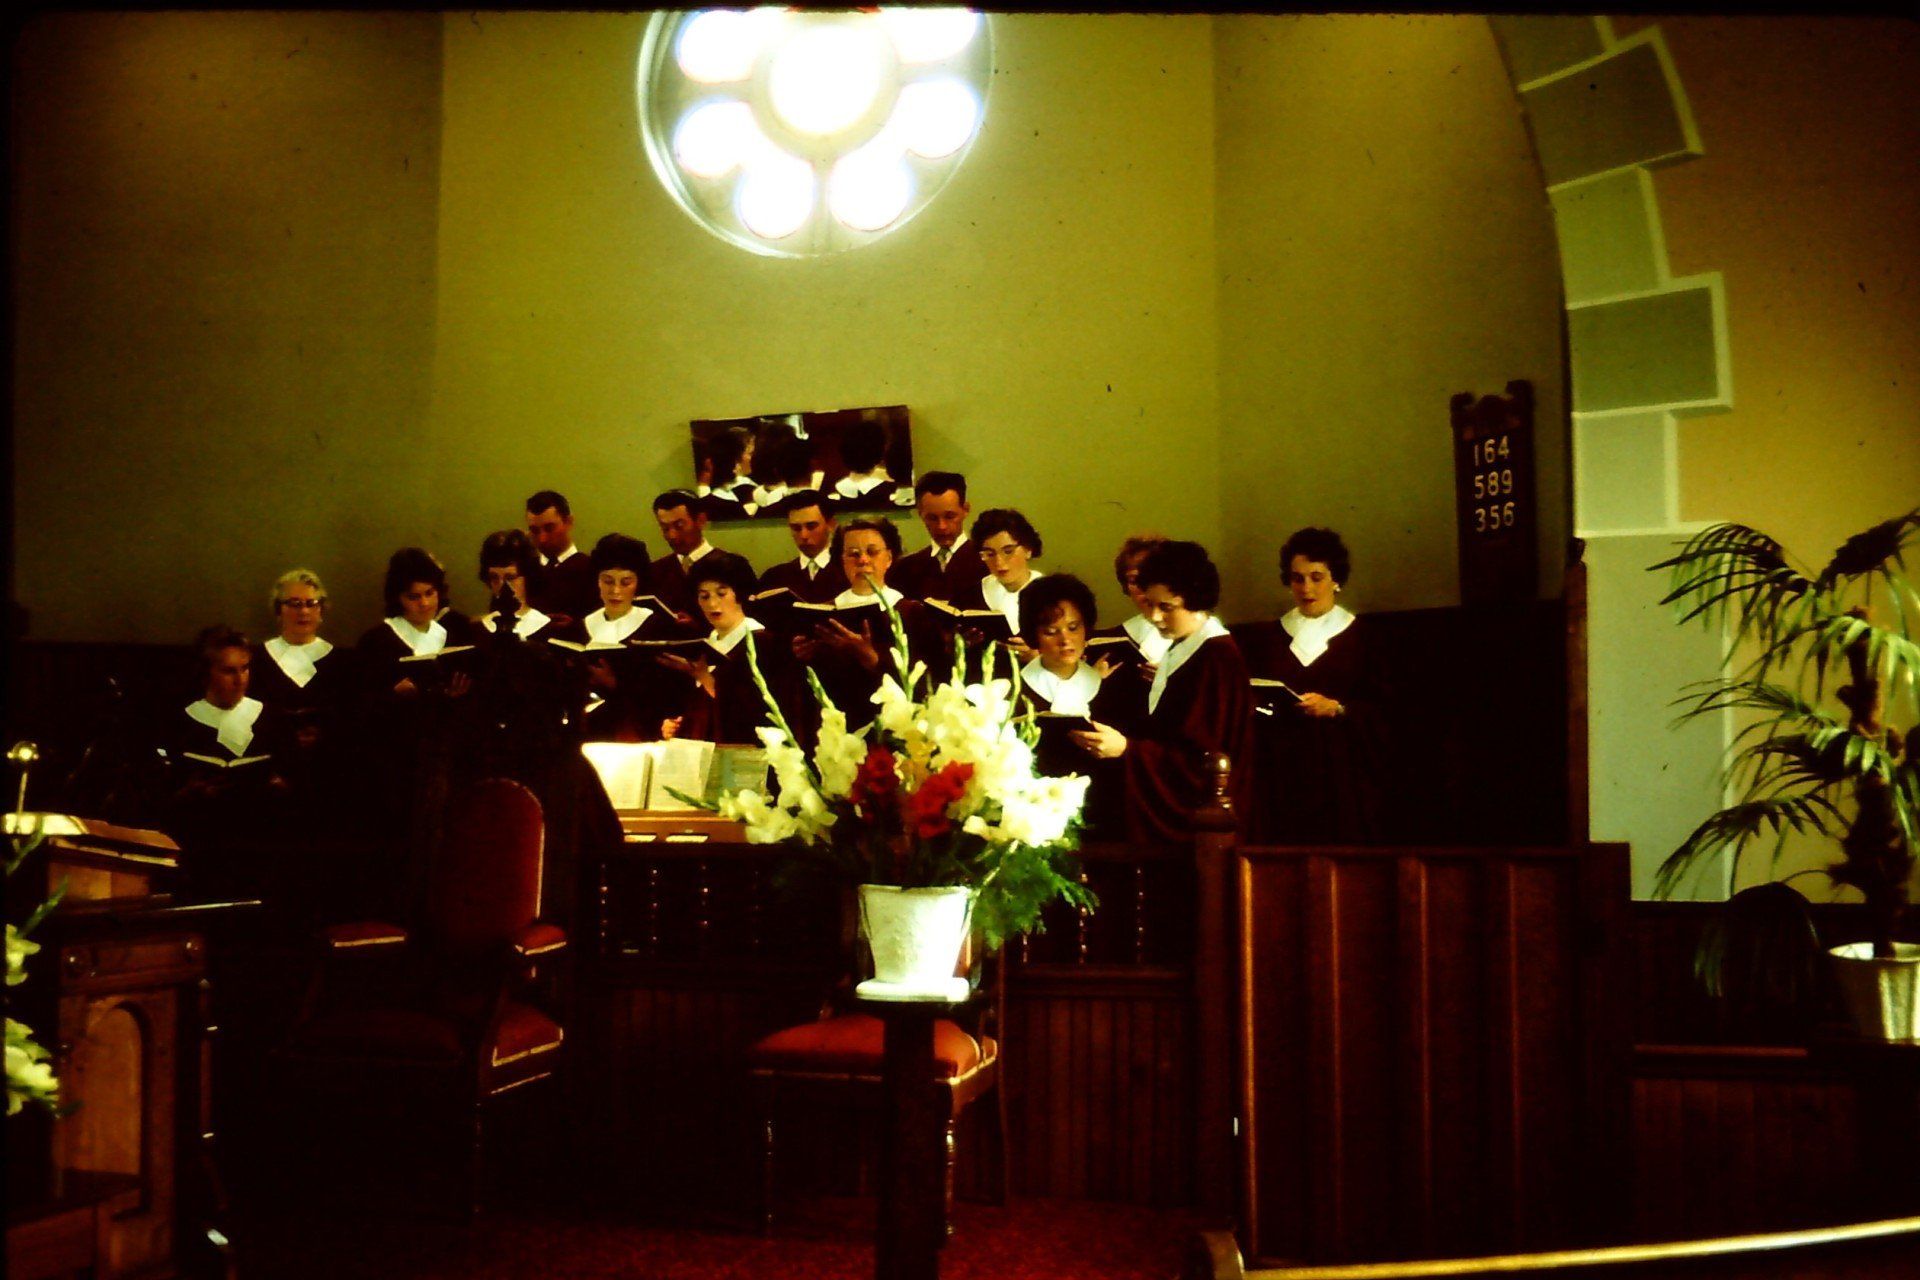 St. Andrew's Church Choir, Circa 1962.